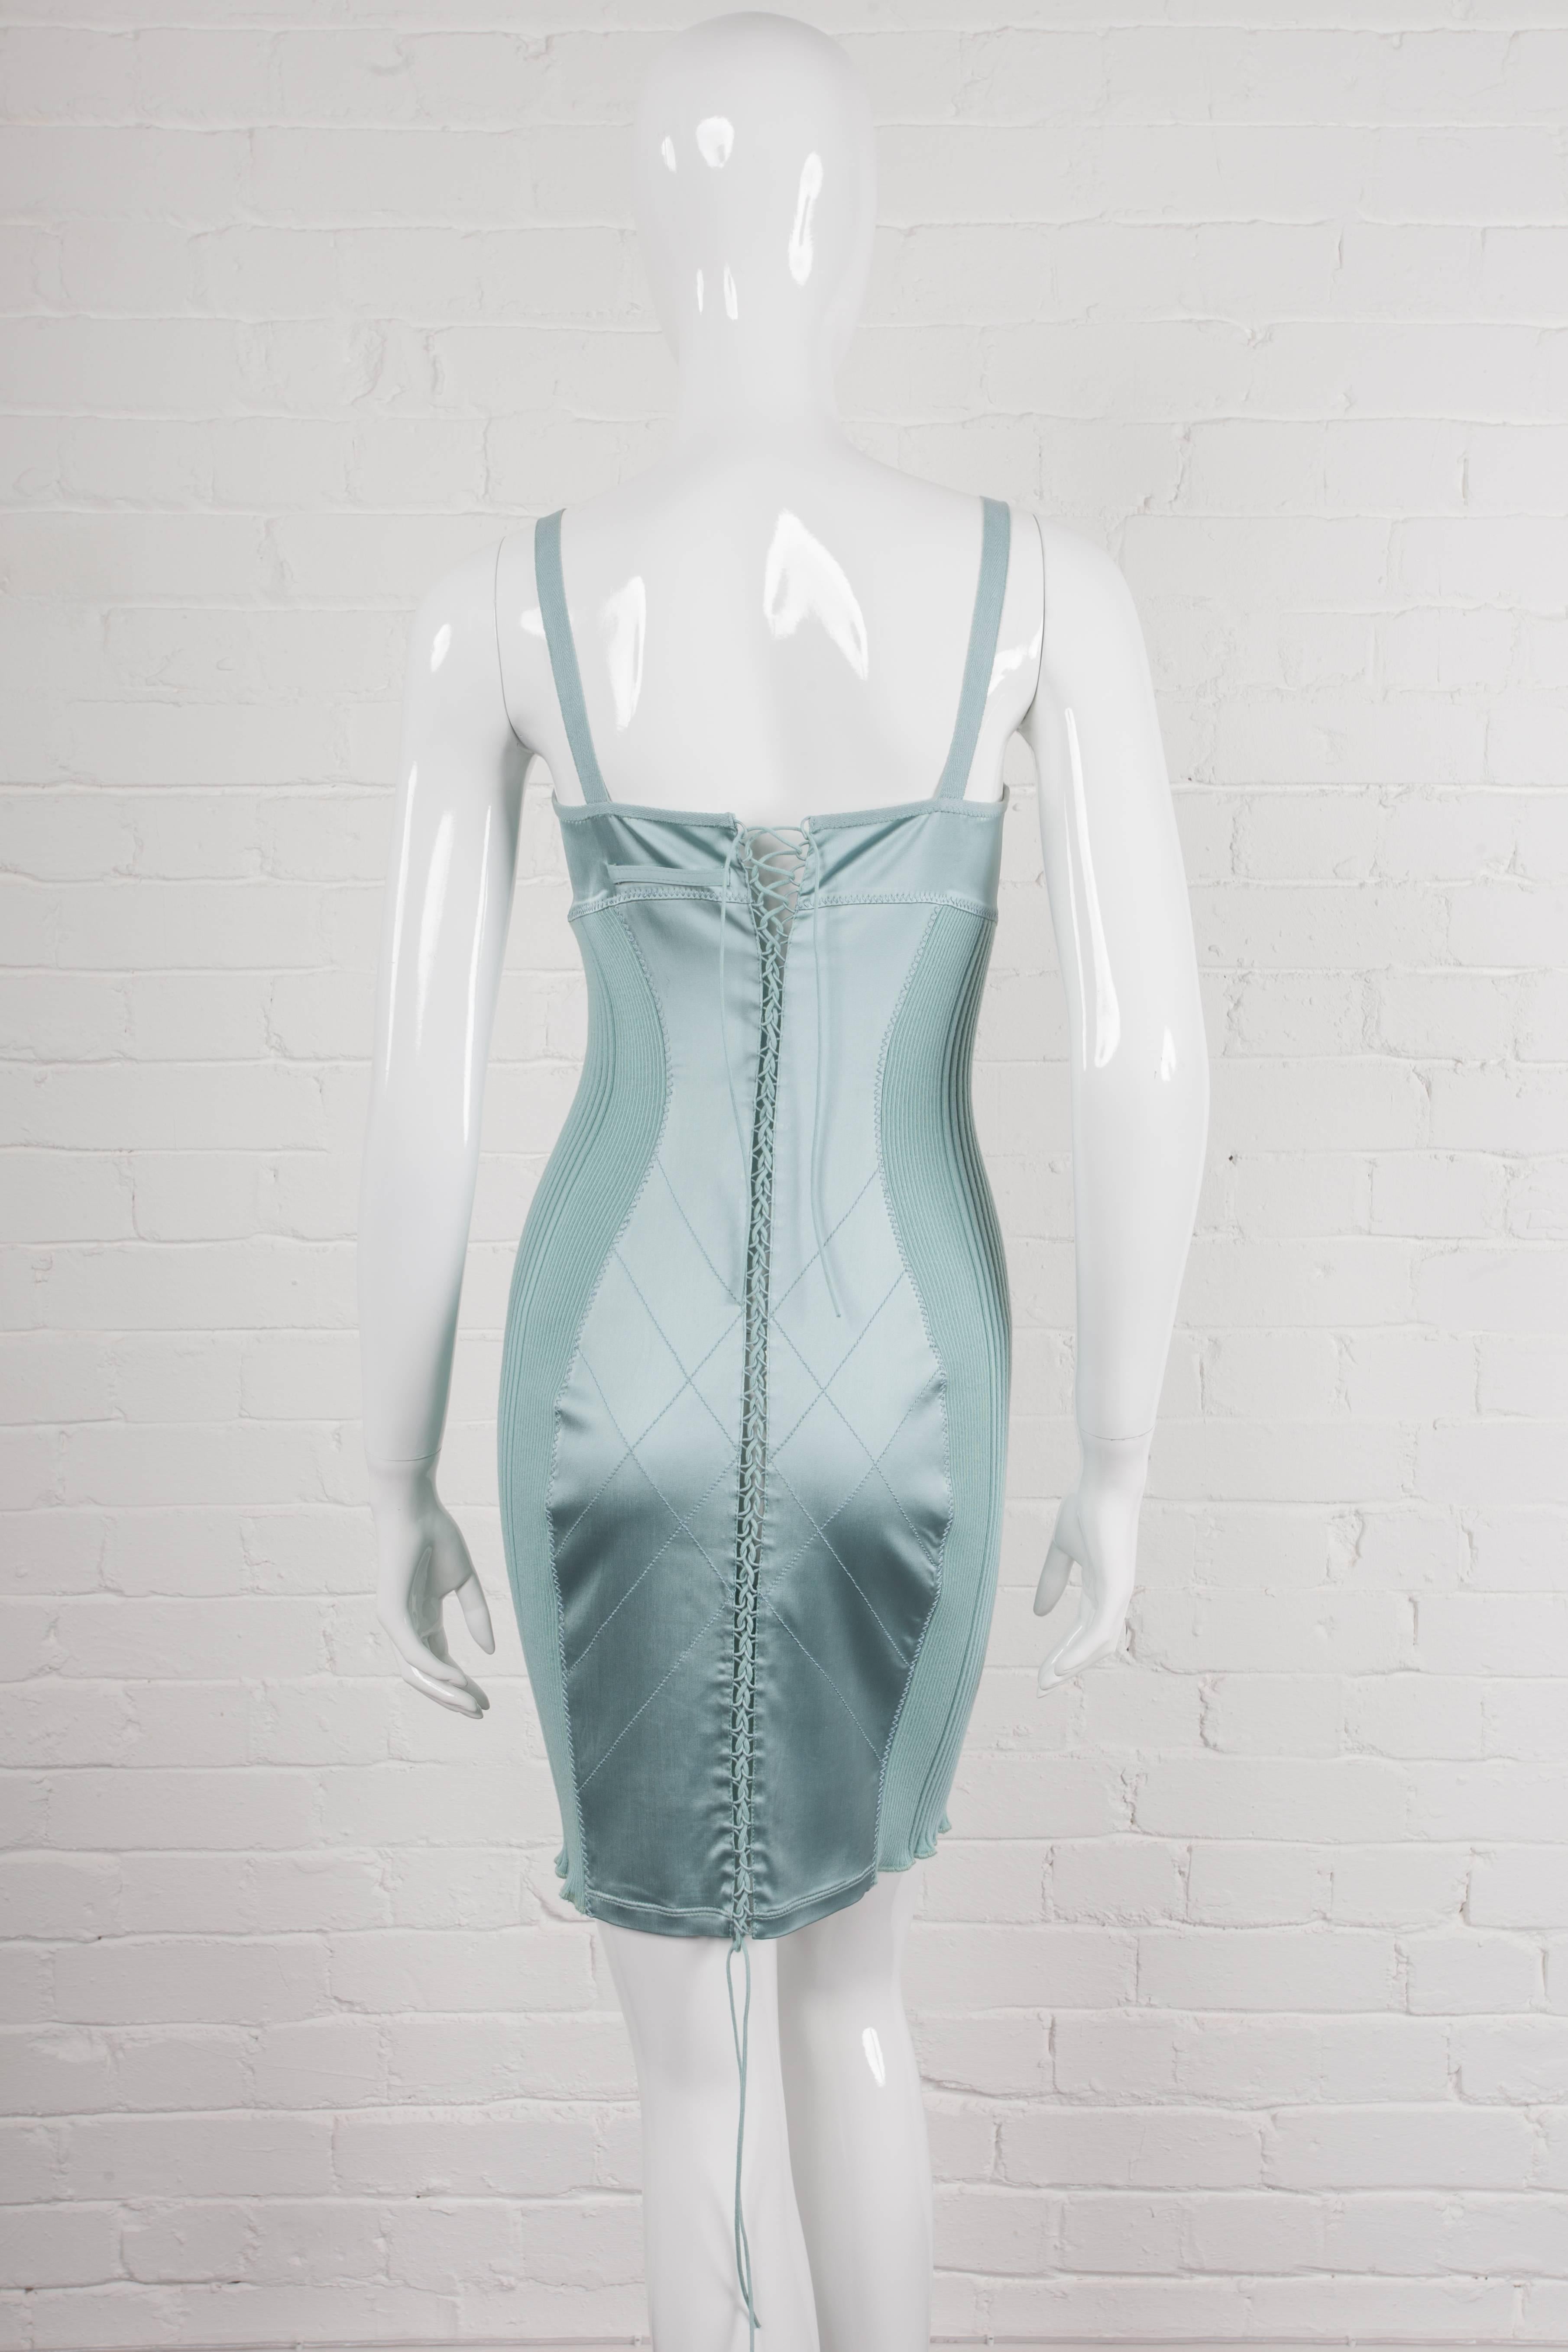 Women's “Elegance Contest” 1992 Jean Paul Gaultier negligé dress. For Sale